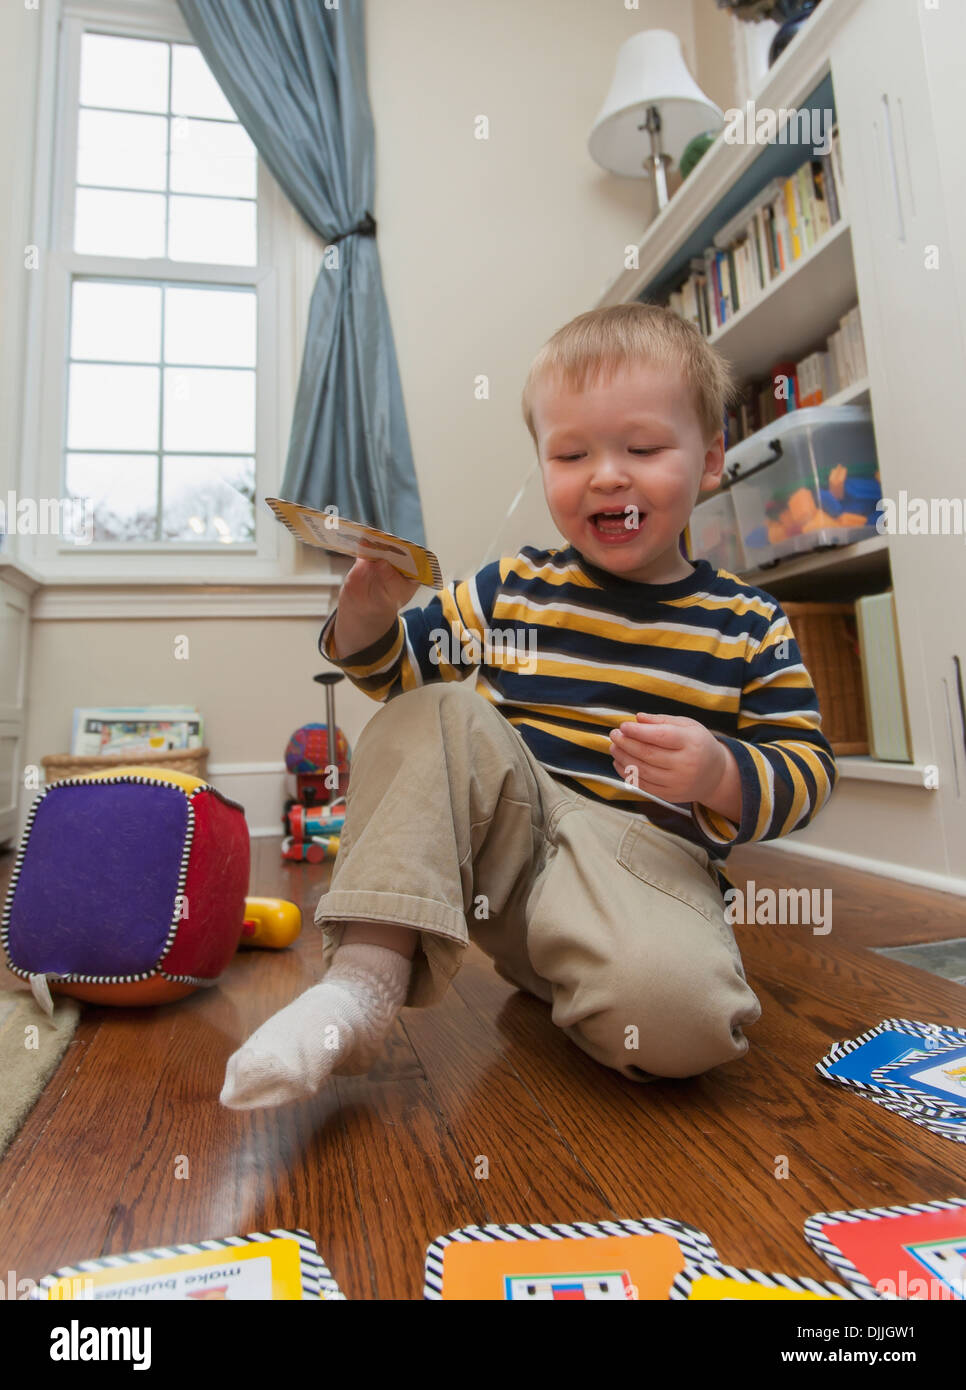 Une prise de vue au grand angle d'un air amusé, heureux, un garçon de deux ans jouant lui-même avec un jeu sur le sol à son domicile Banque D'Images